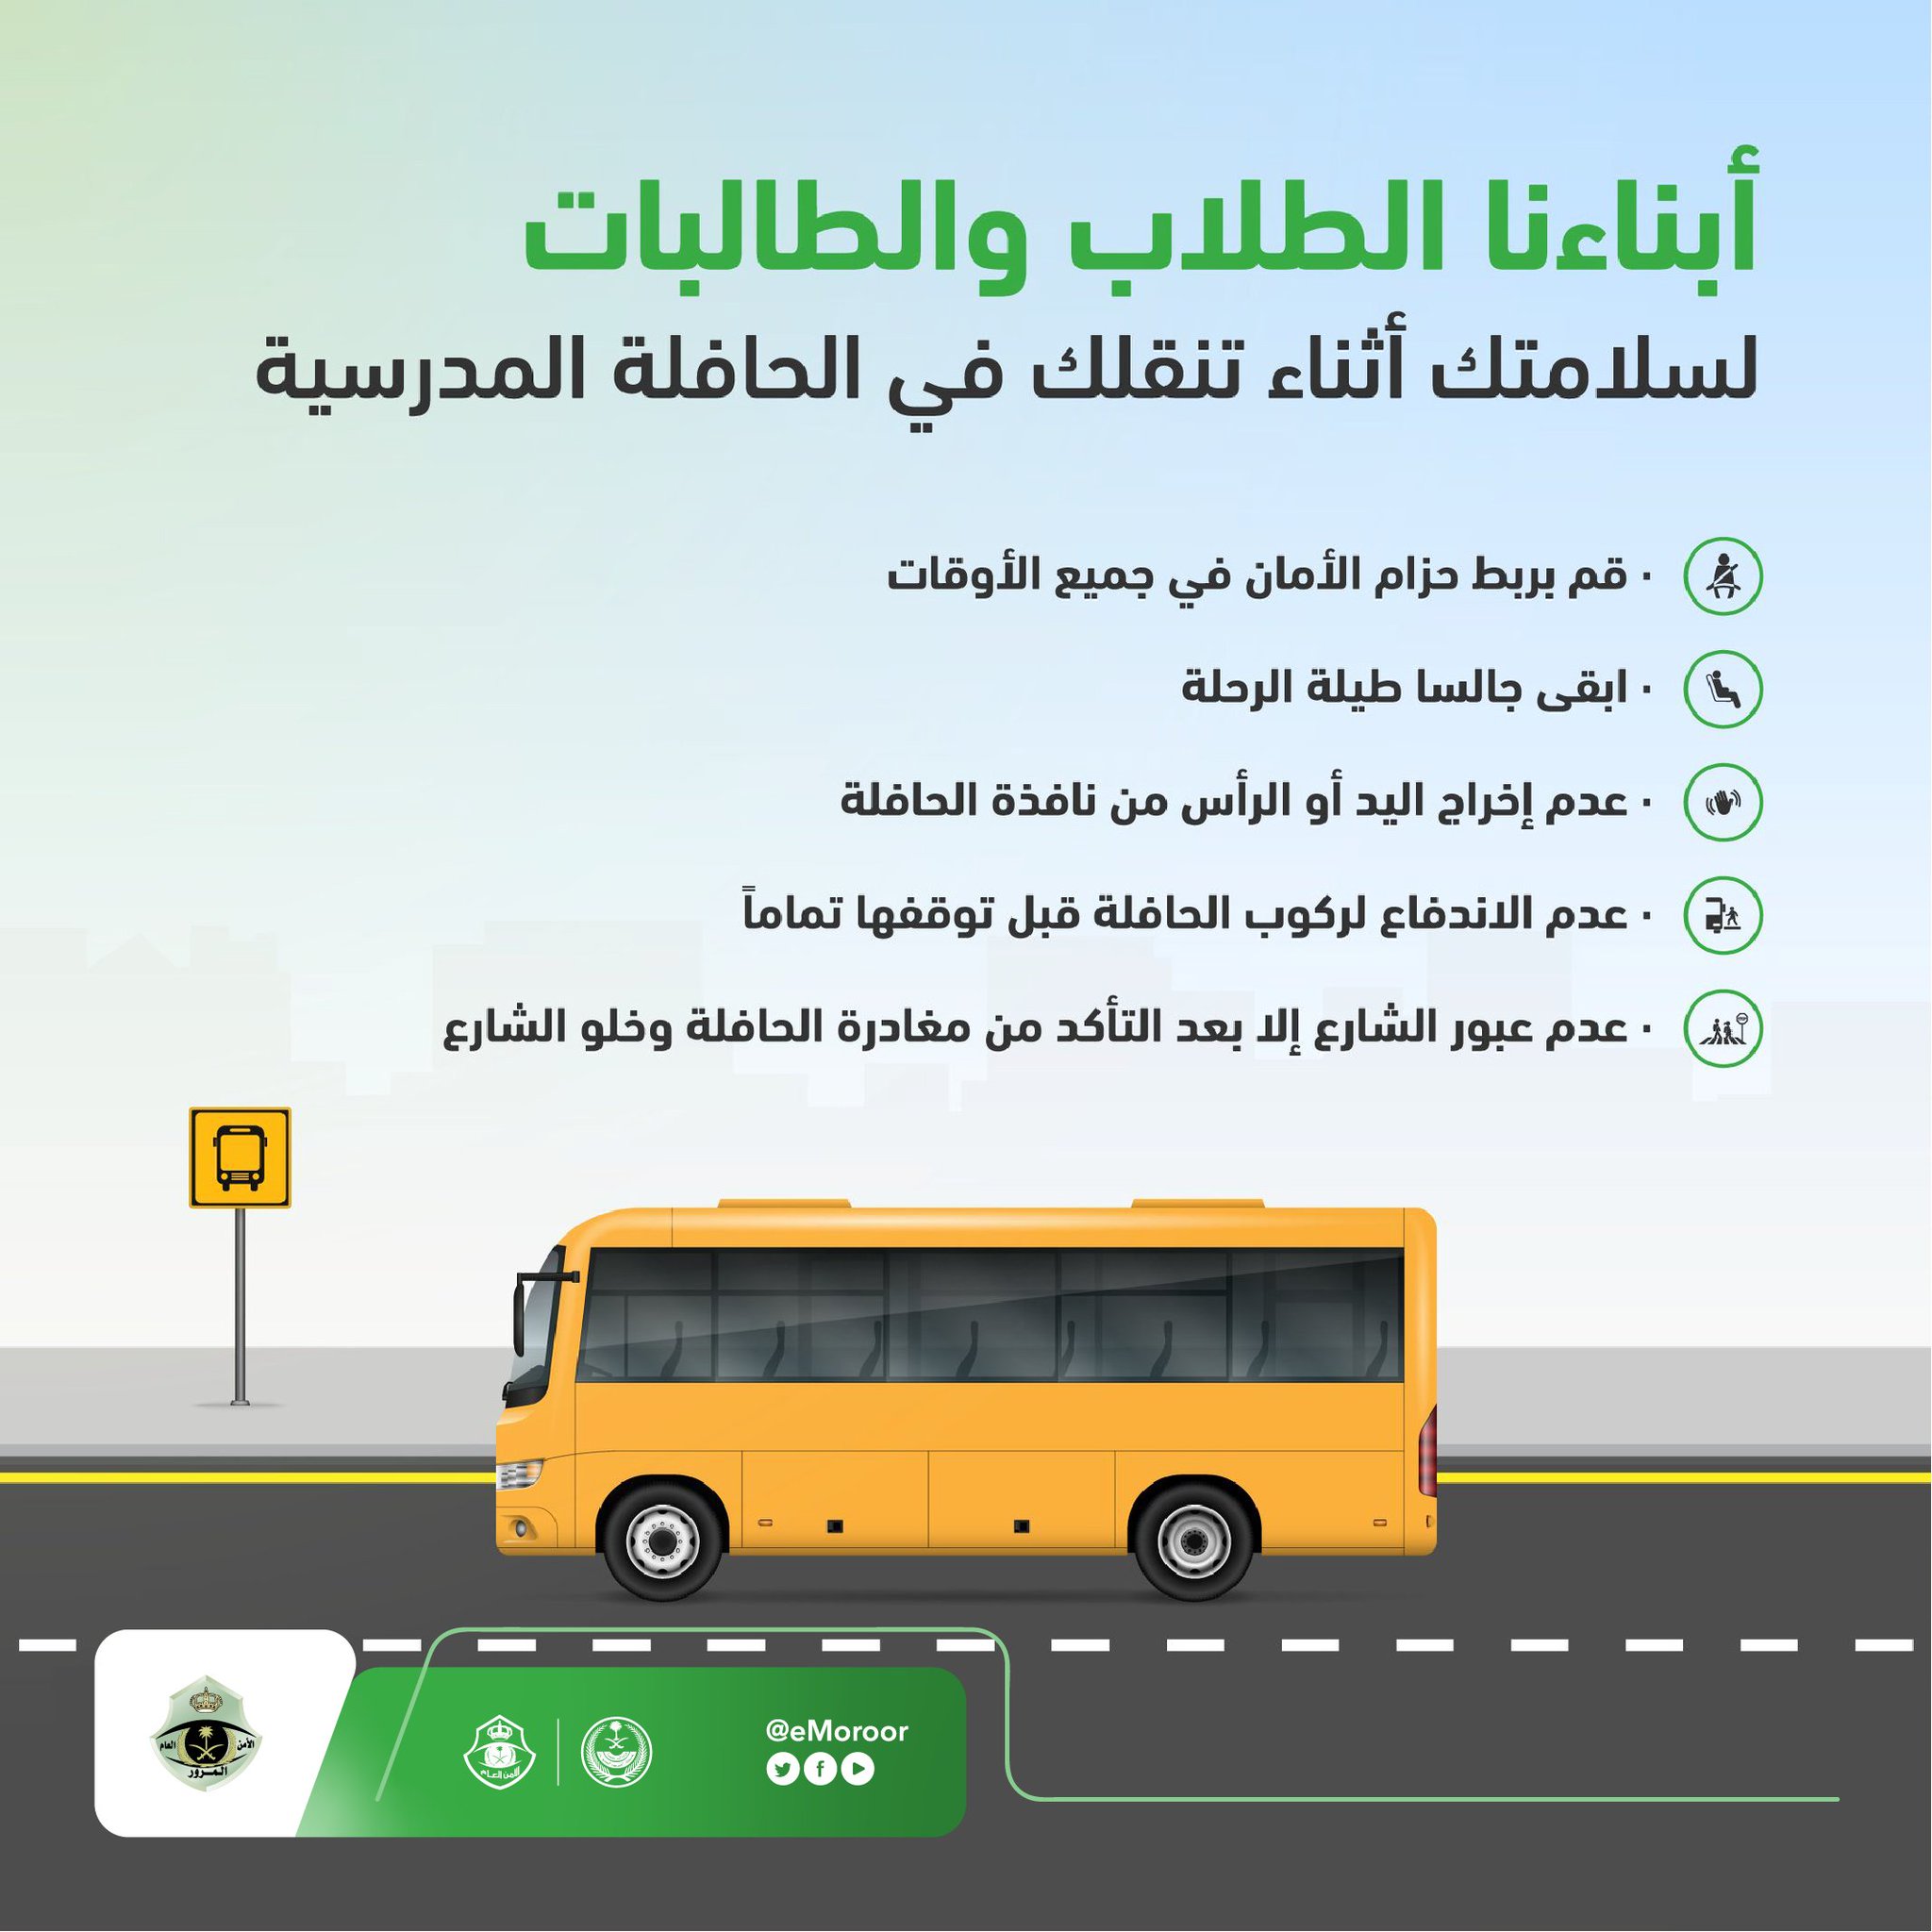 المرور السعودي تُصدر بعض الإرشادات للطلاب والطالبات وأولياء أمورهم بمناسبة عودة الدراسة 1